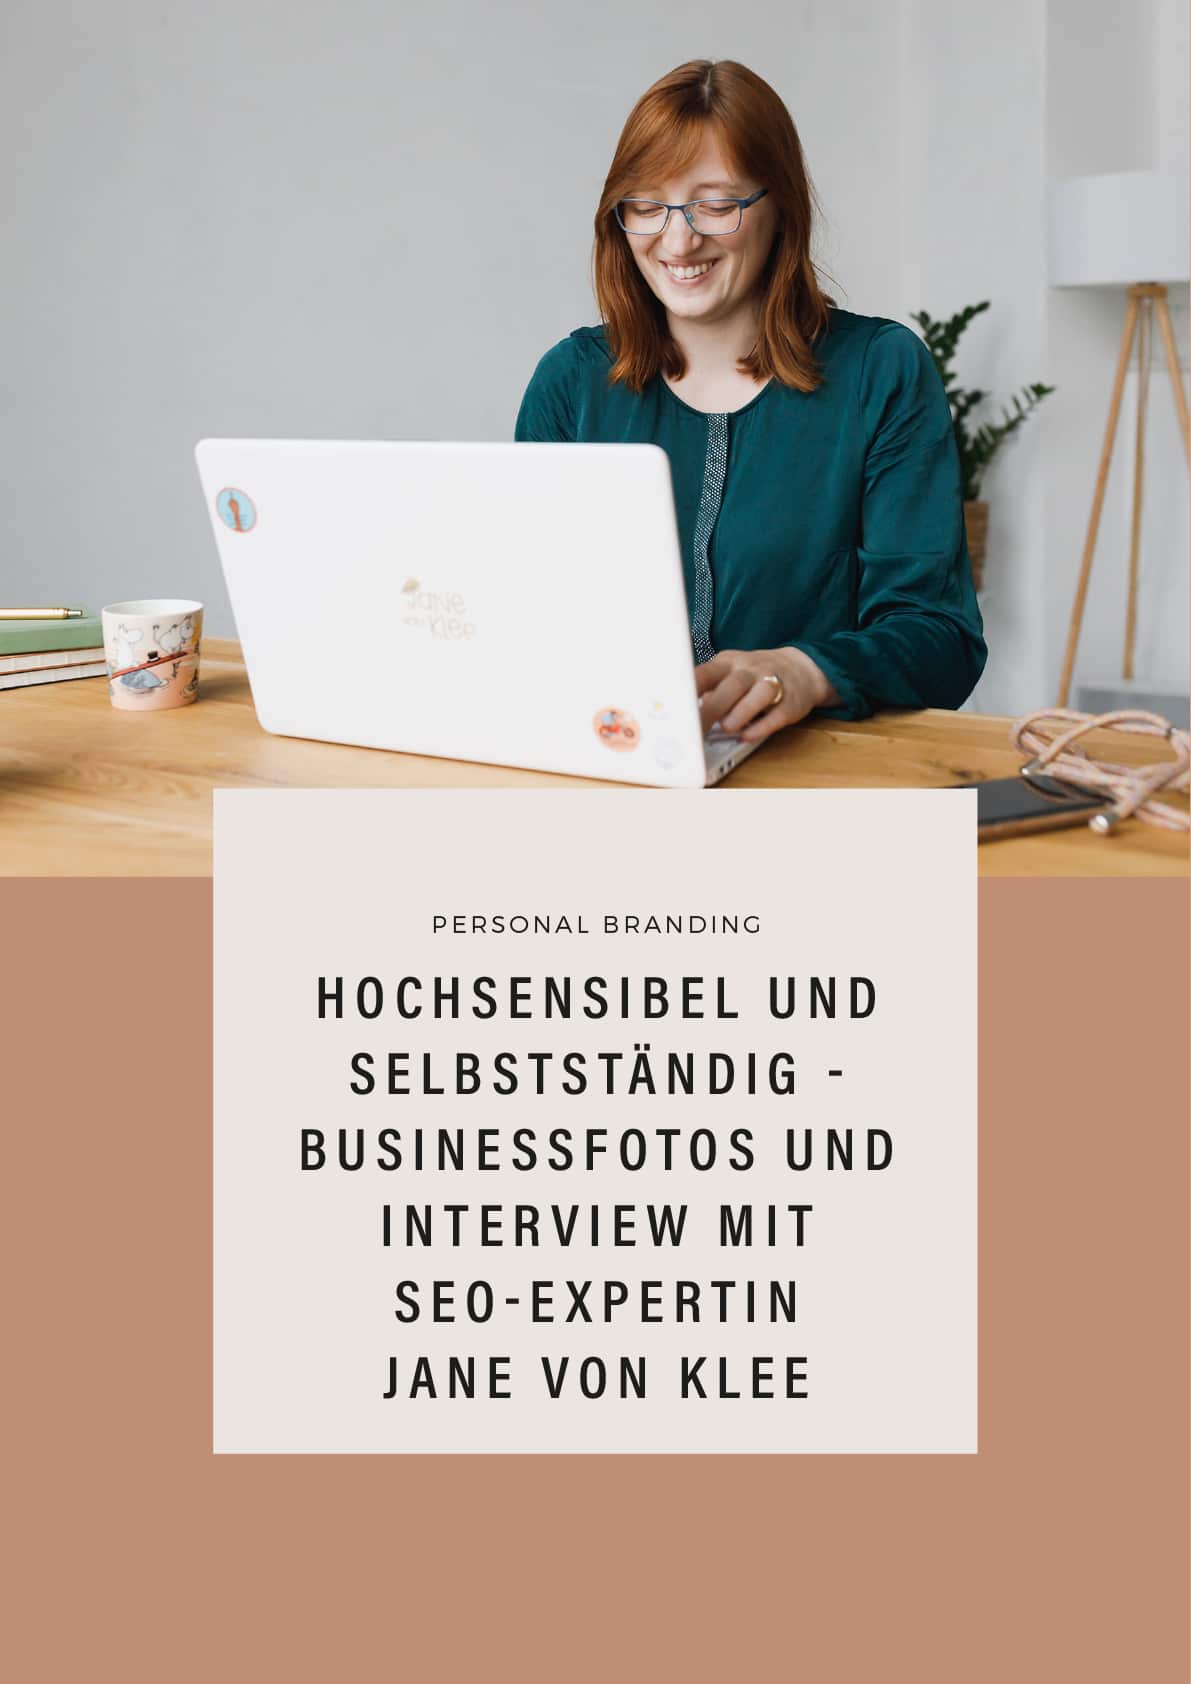 Hochsensibel und selbstständig - Interview mit SEO-Expertin Jane von Klee - Business Fotos Leipzig